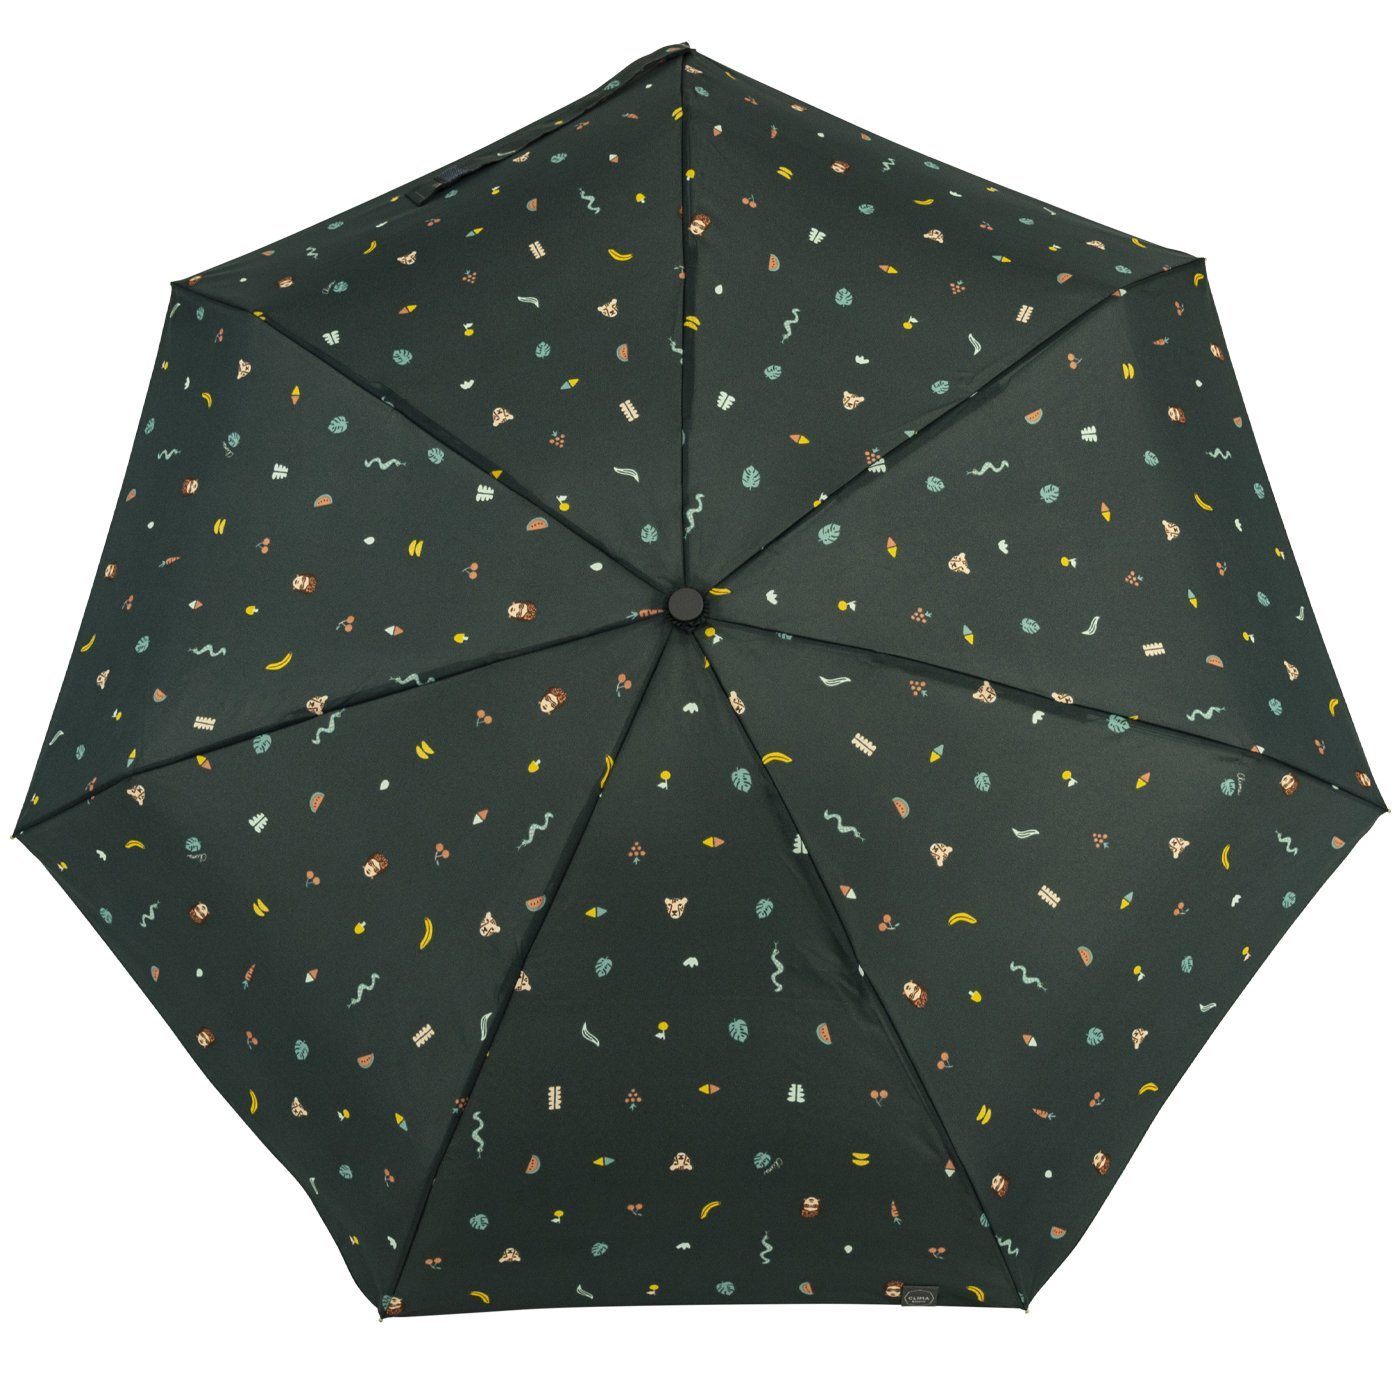 mit Tropen-Dschungel-Motiven klein, Damen-Regenschirm, - stabil, Taschenregenschirm kompakt, petrol mit farbenfroh Handöffner, bisetti